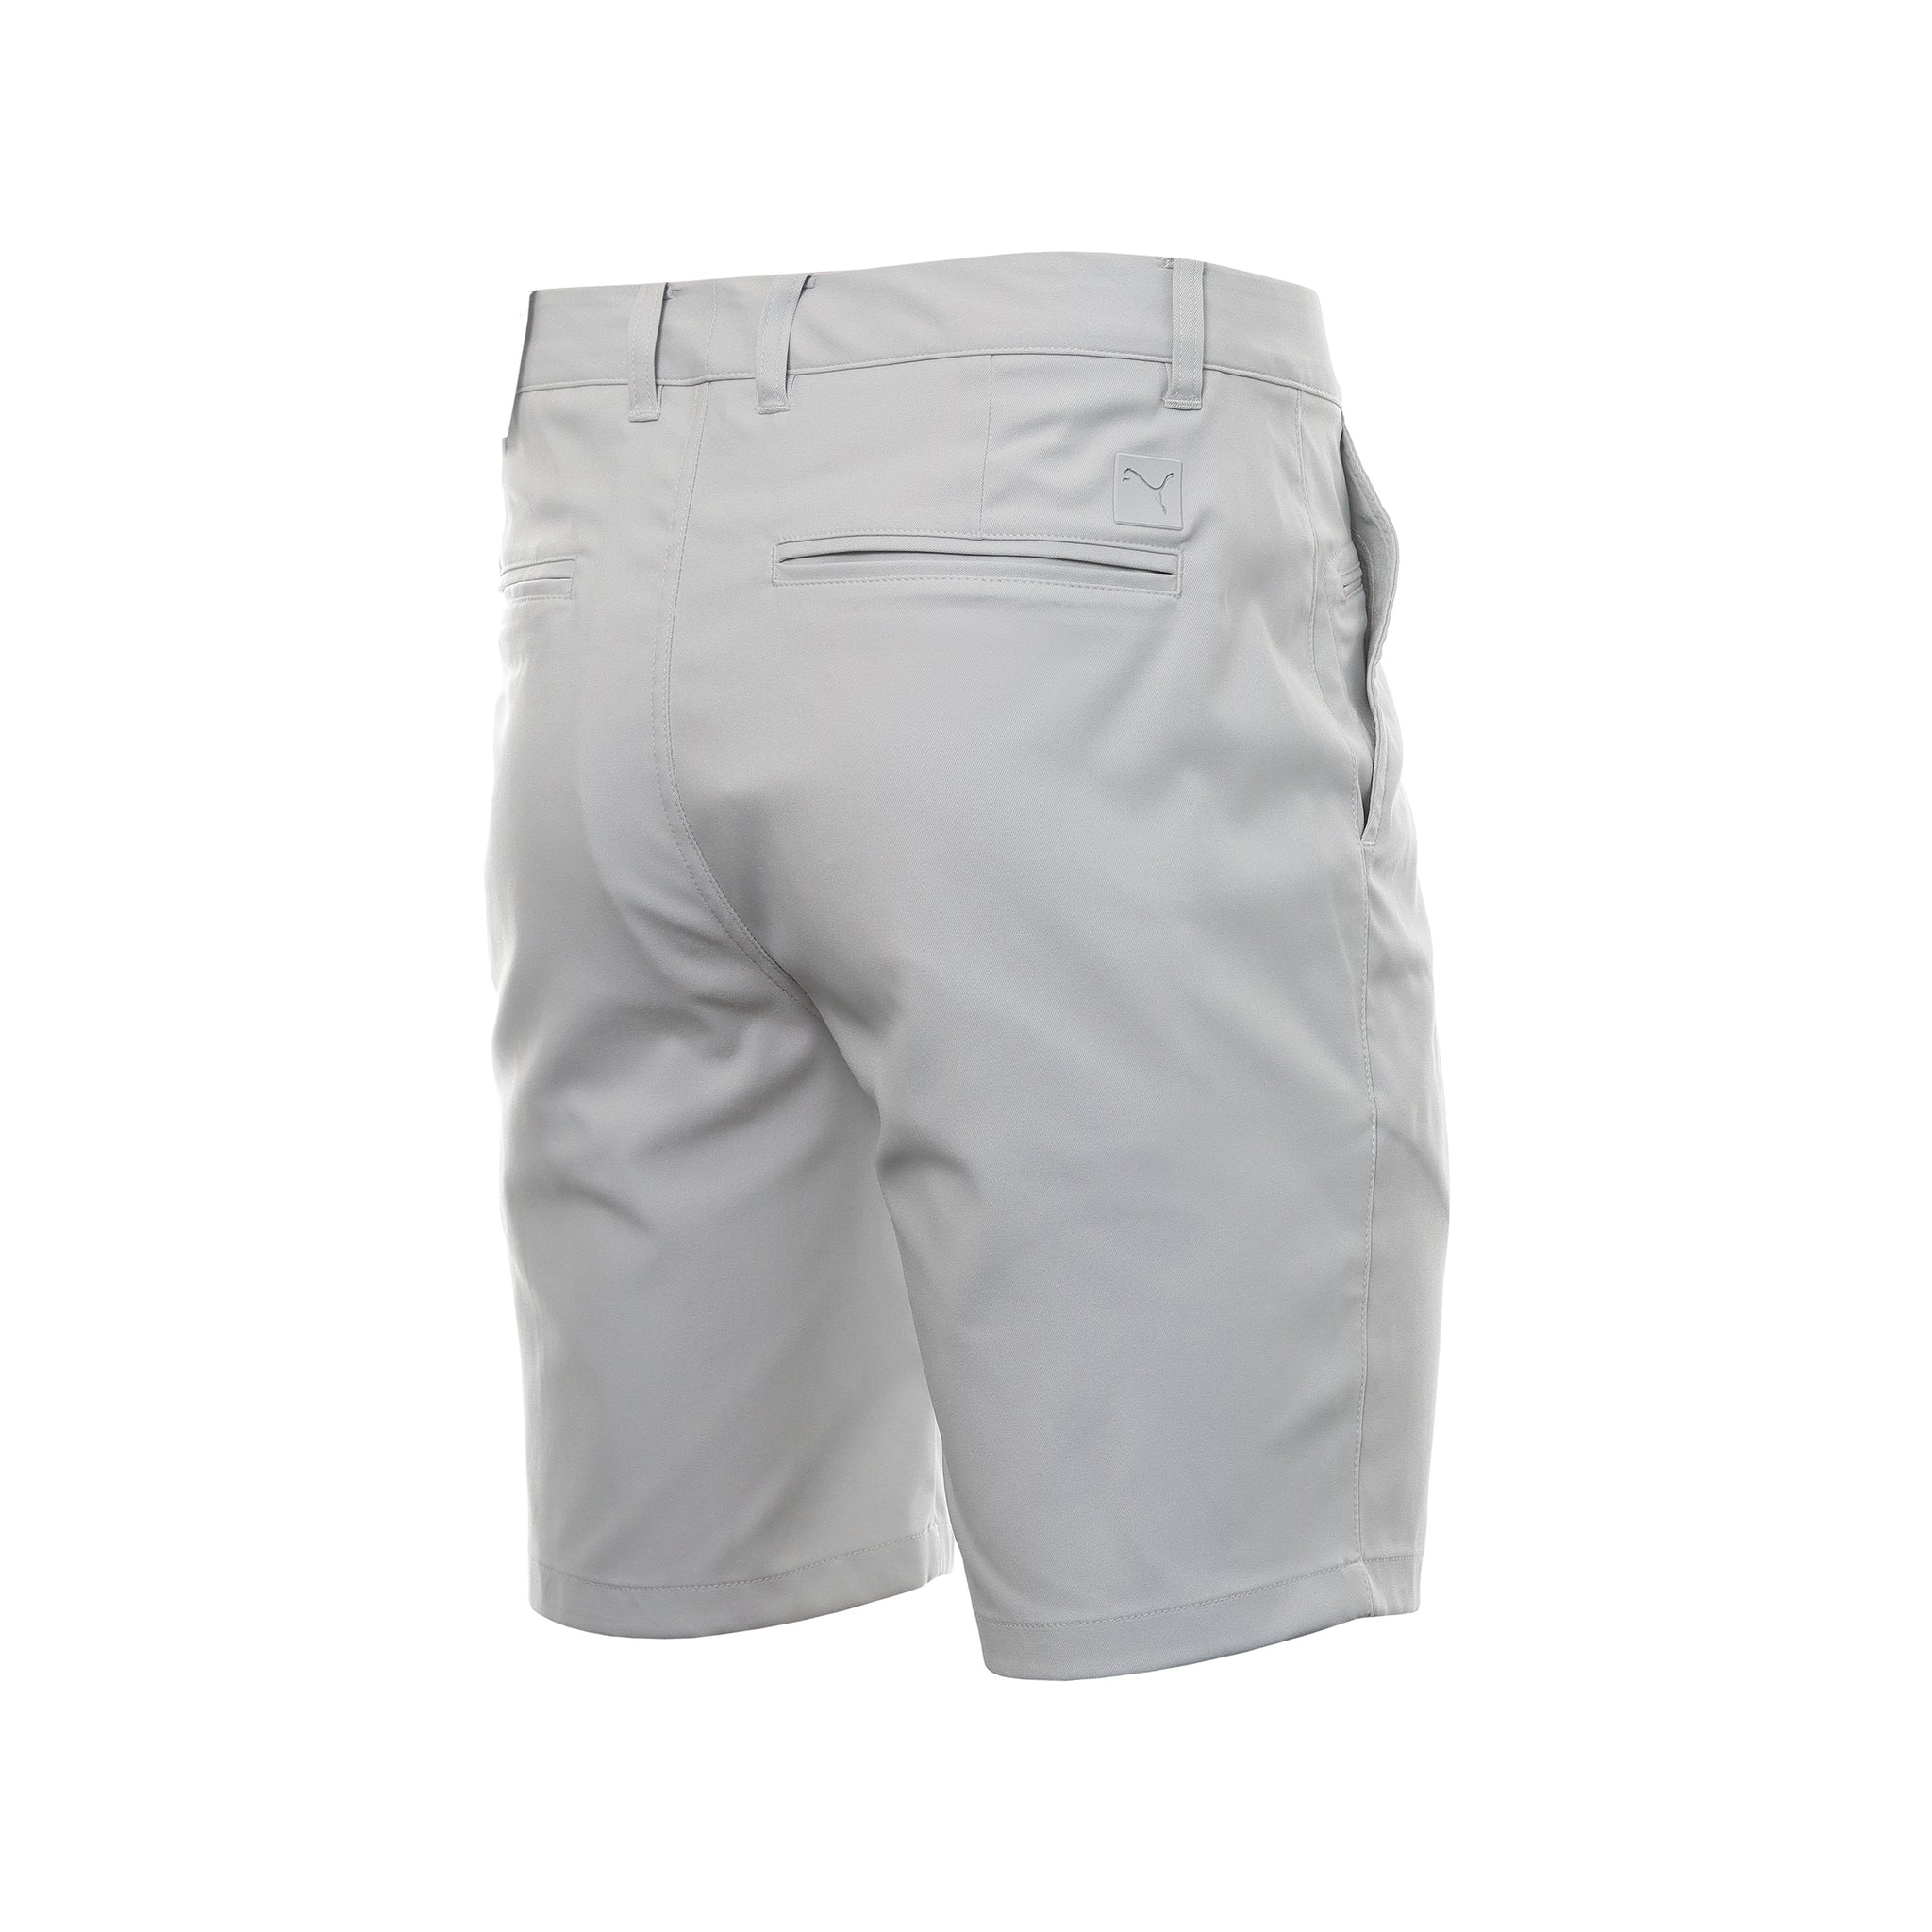 puma-golf-dealer-tailored-8-shorts-620271-ash-grey-04